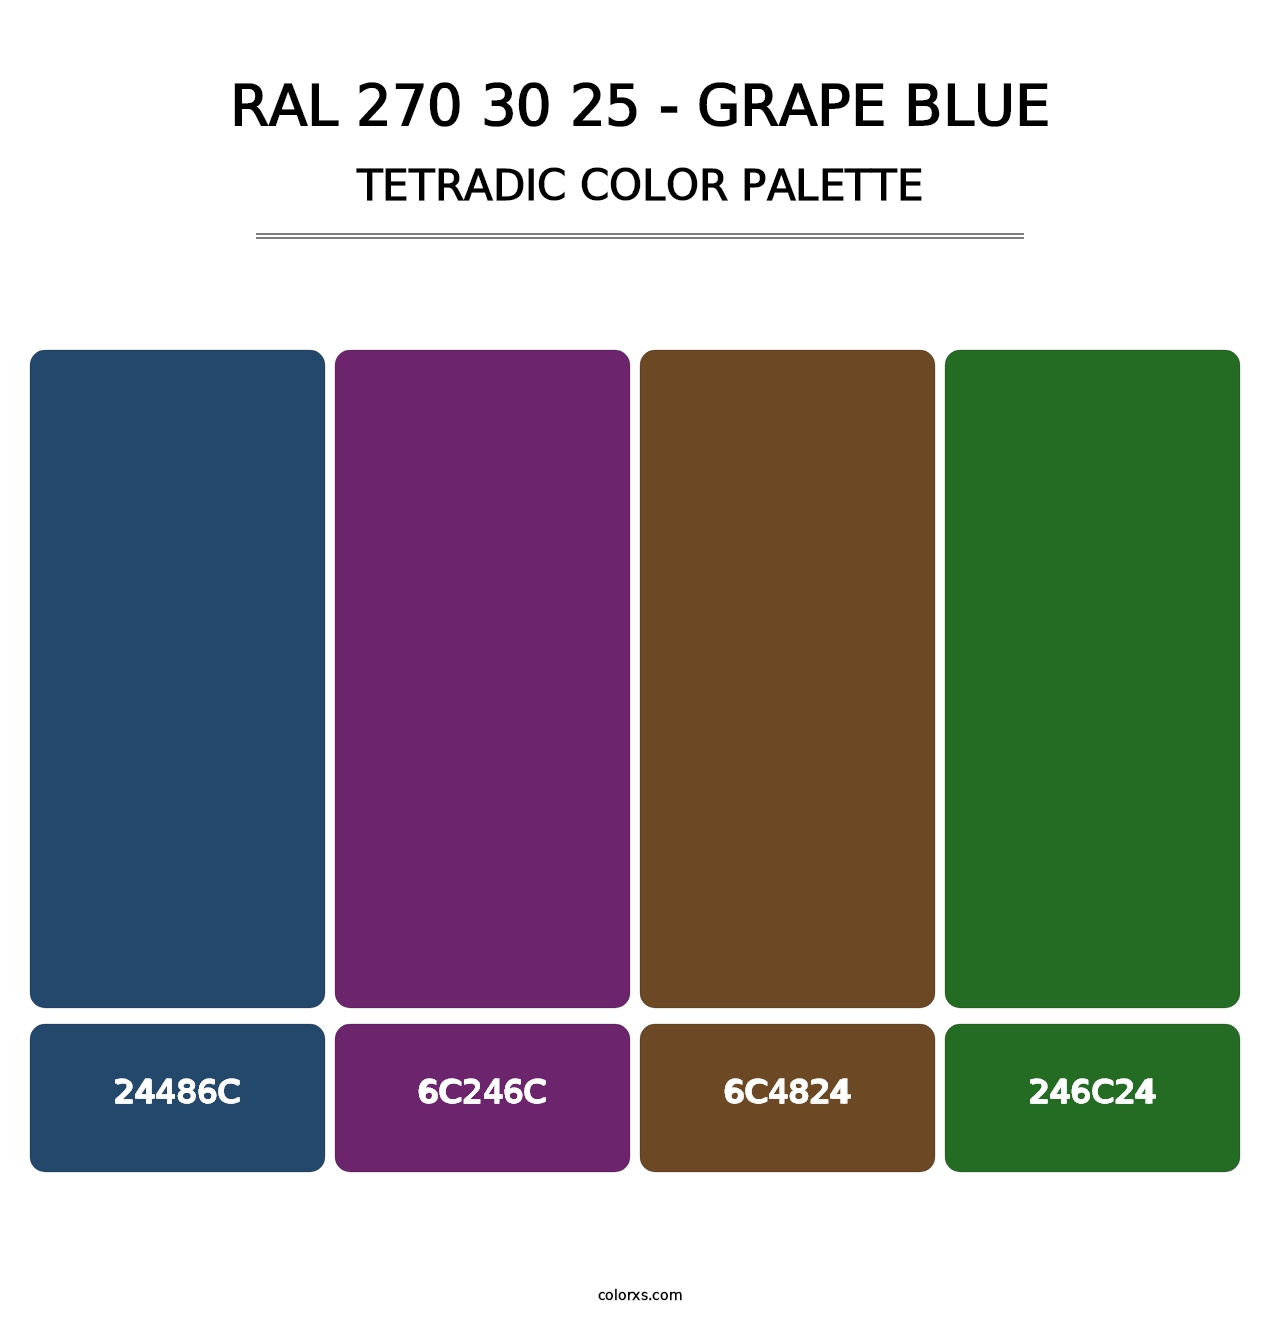 RAL 270 30 25 - Grape Blue - Tetradic Color Palette